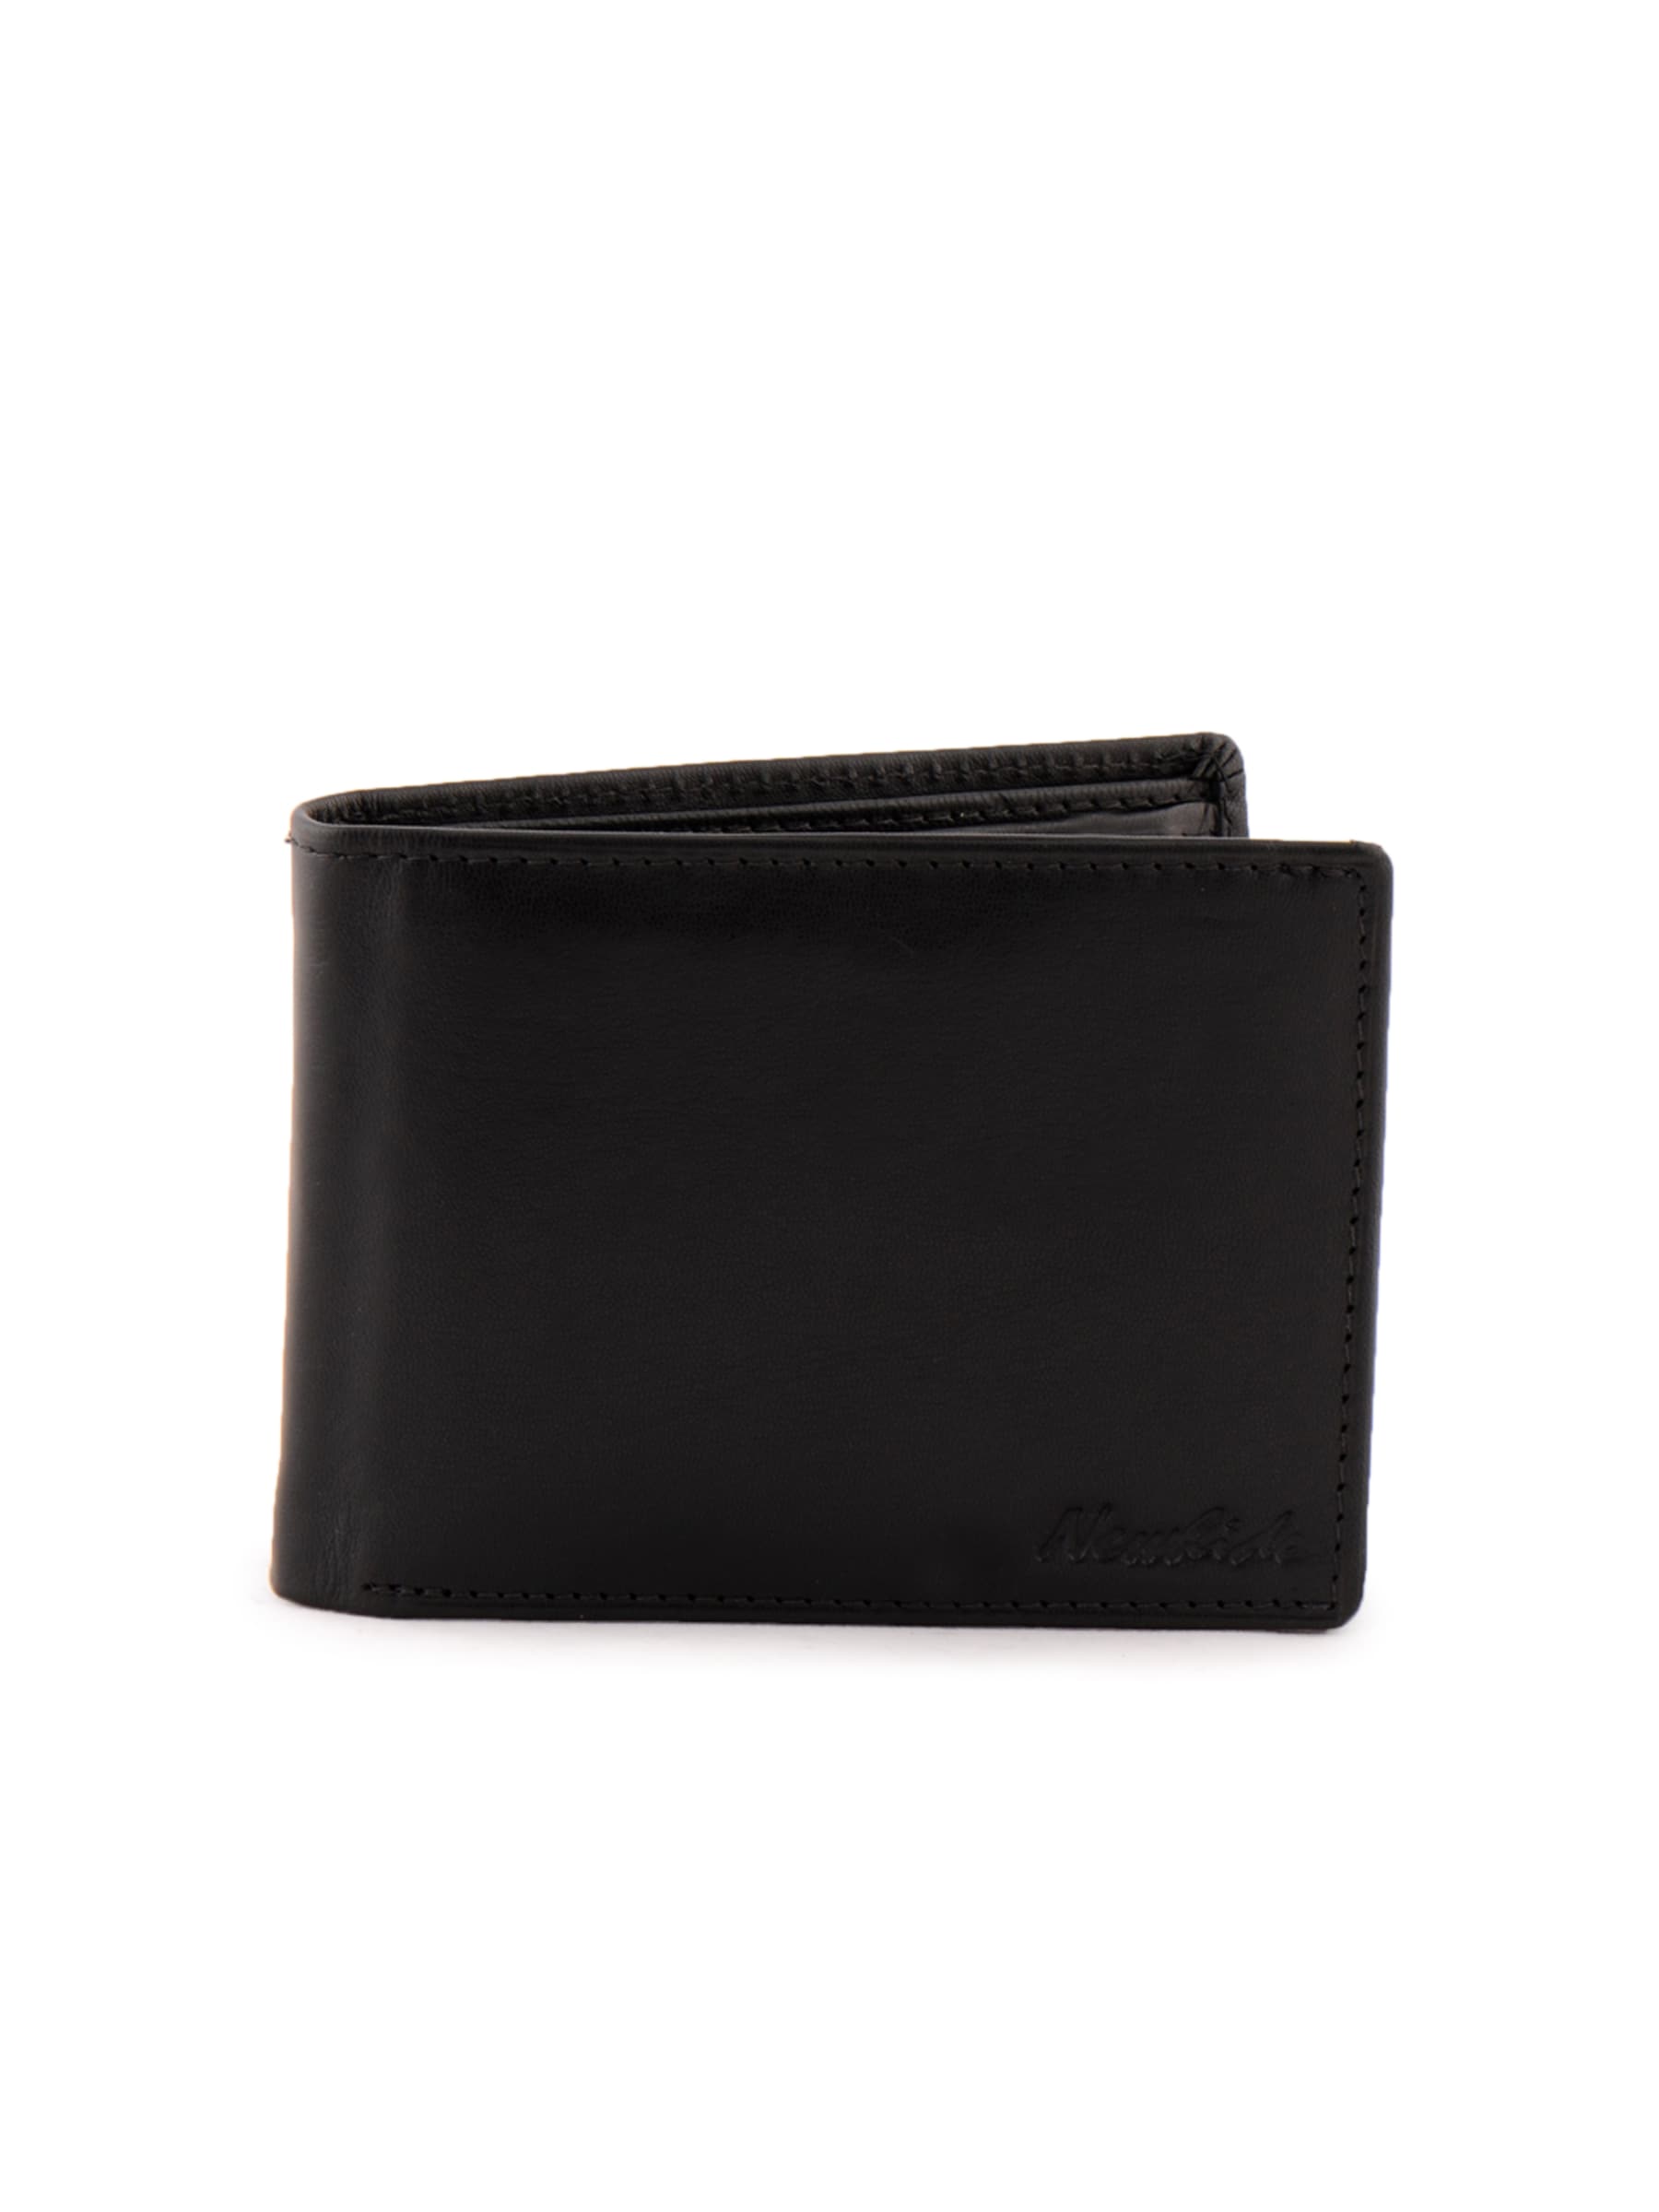 Newhide Zip Pocket Wallet